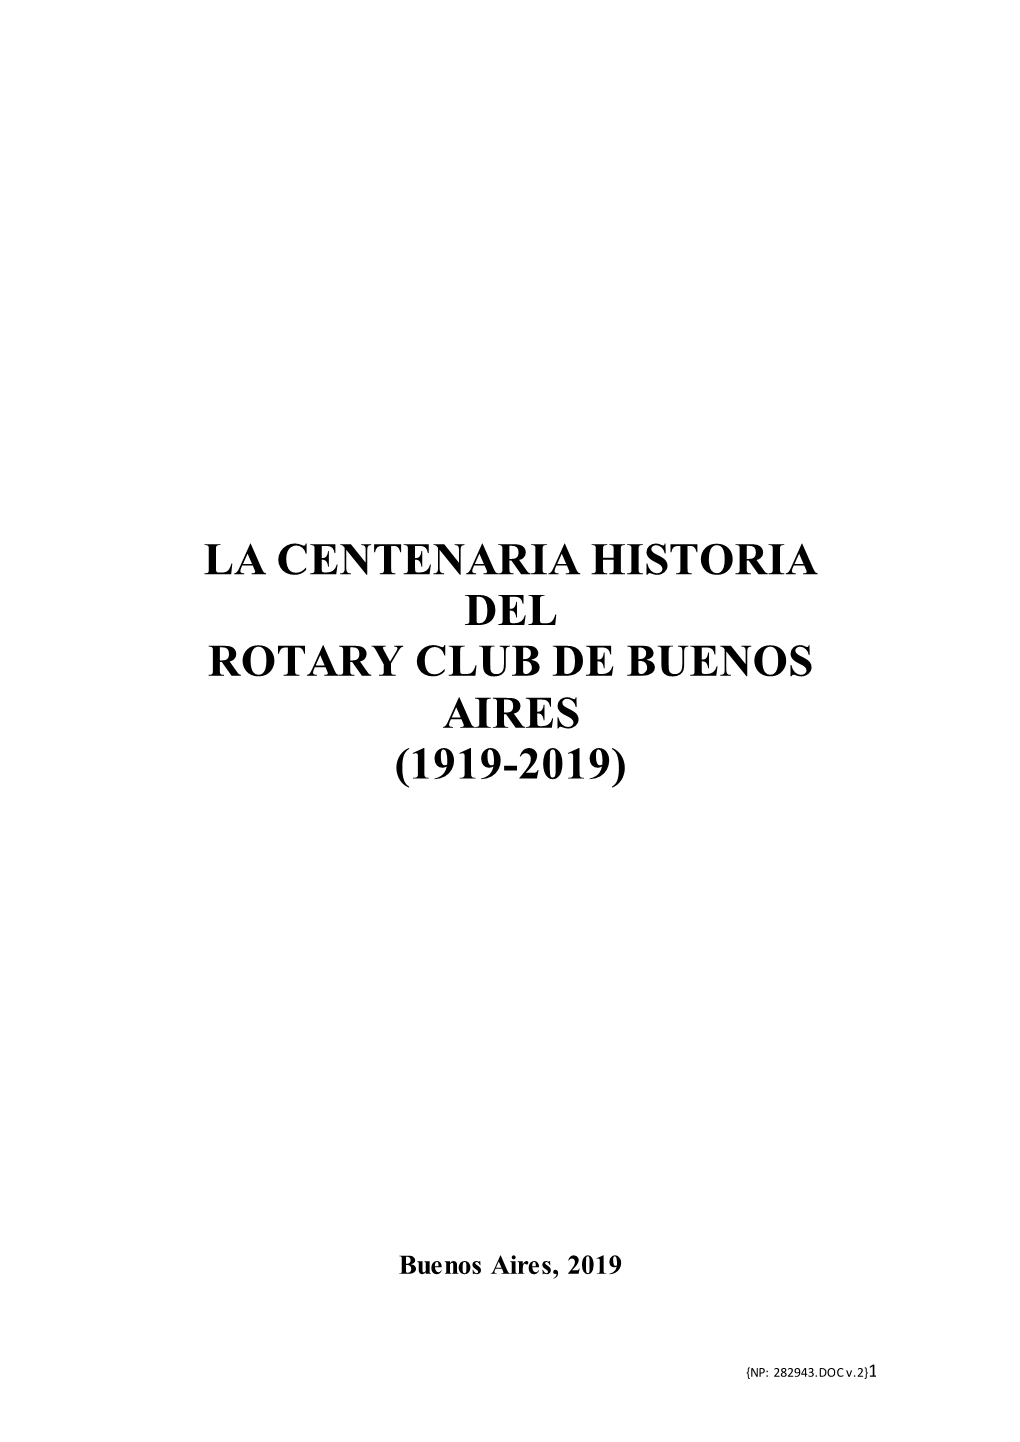 La Centenaria Historia Del Rotary Club De Buenos Aires (1919-2019)